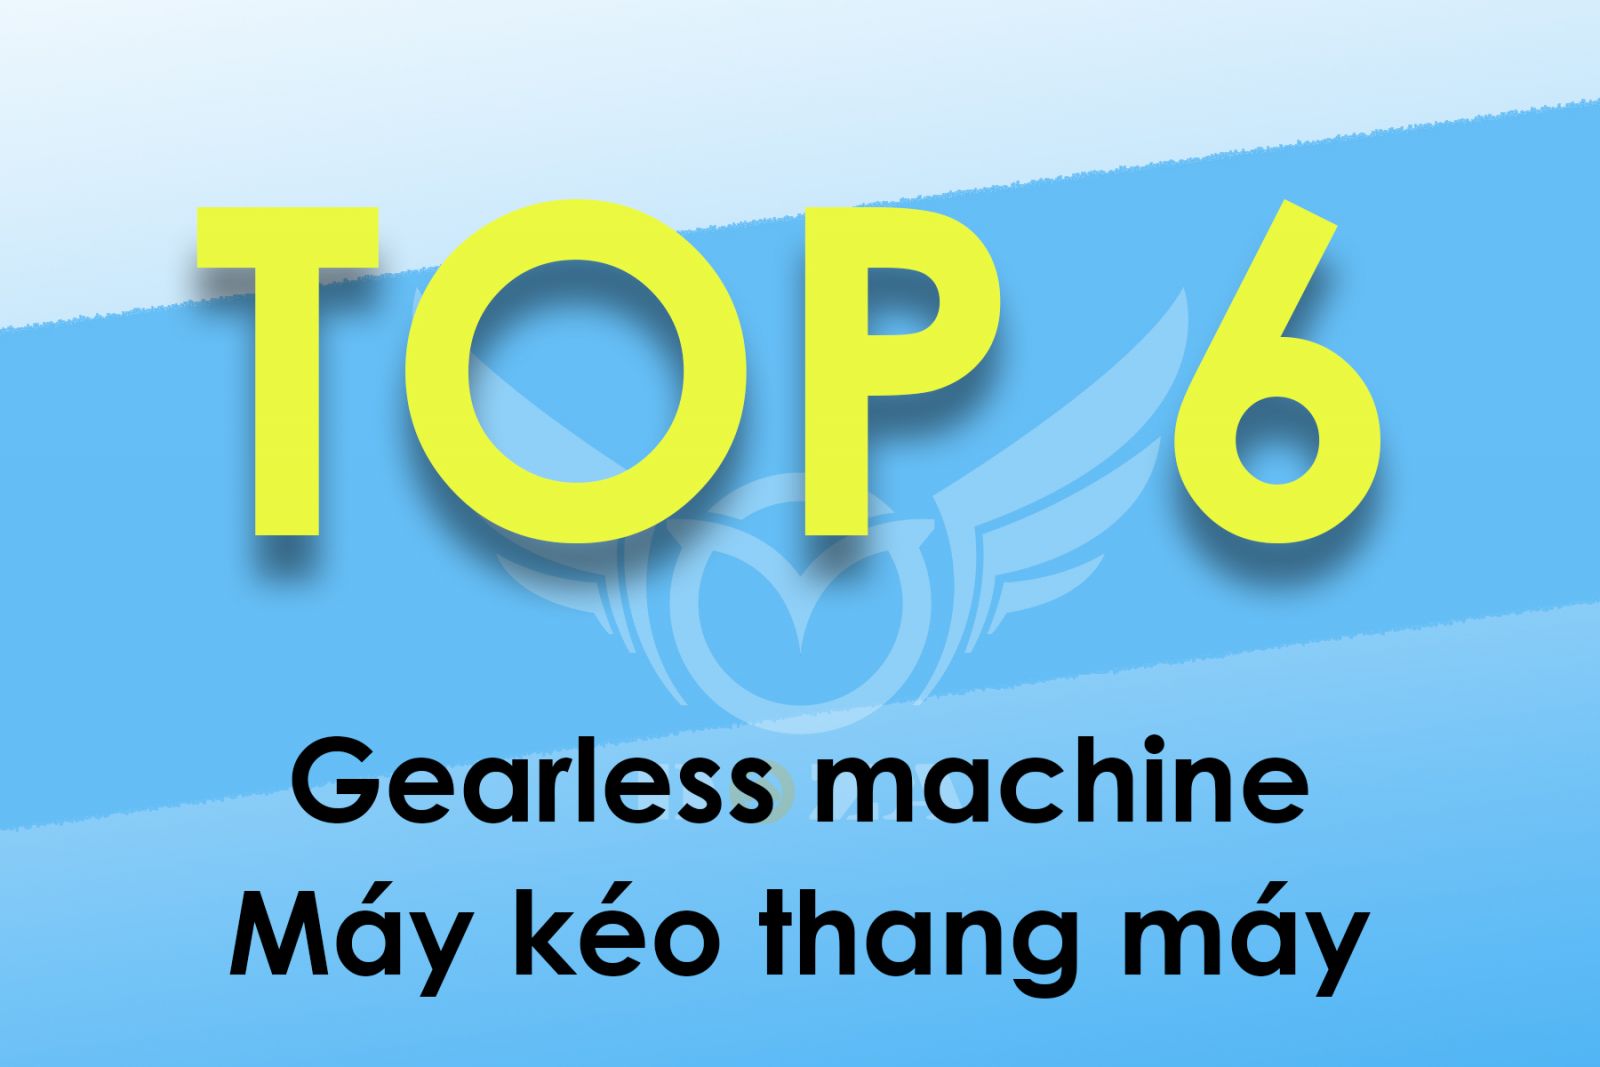 TOP-6 loại máy kéo thang máy được ưa chuộng tại Việt nam